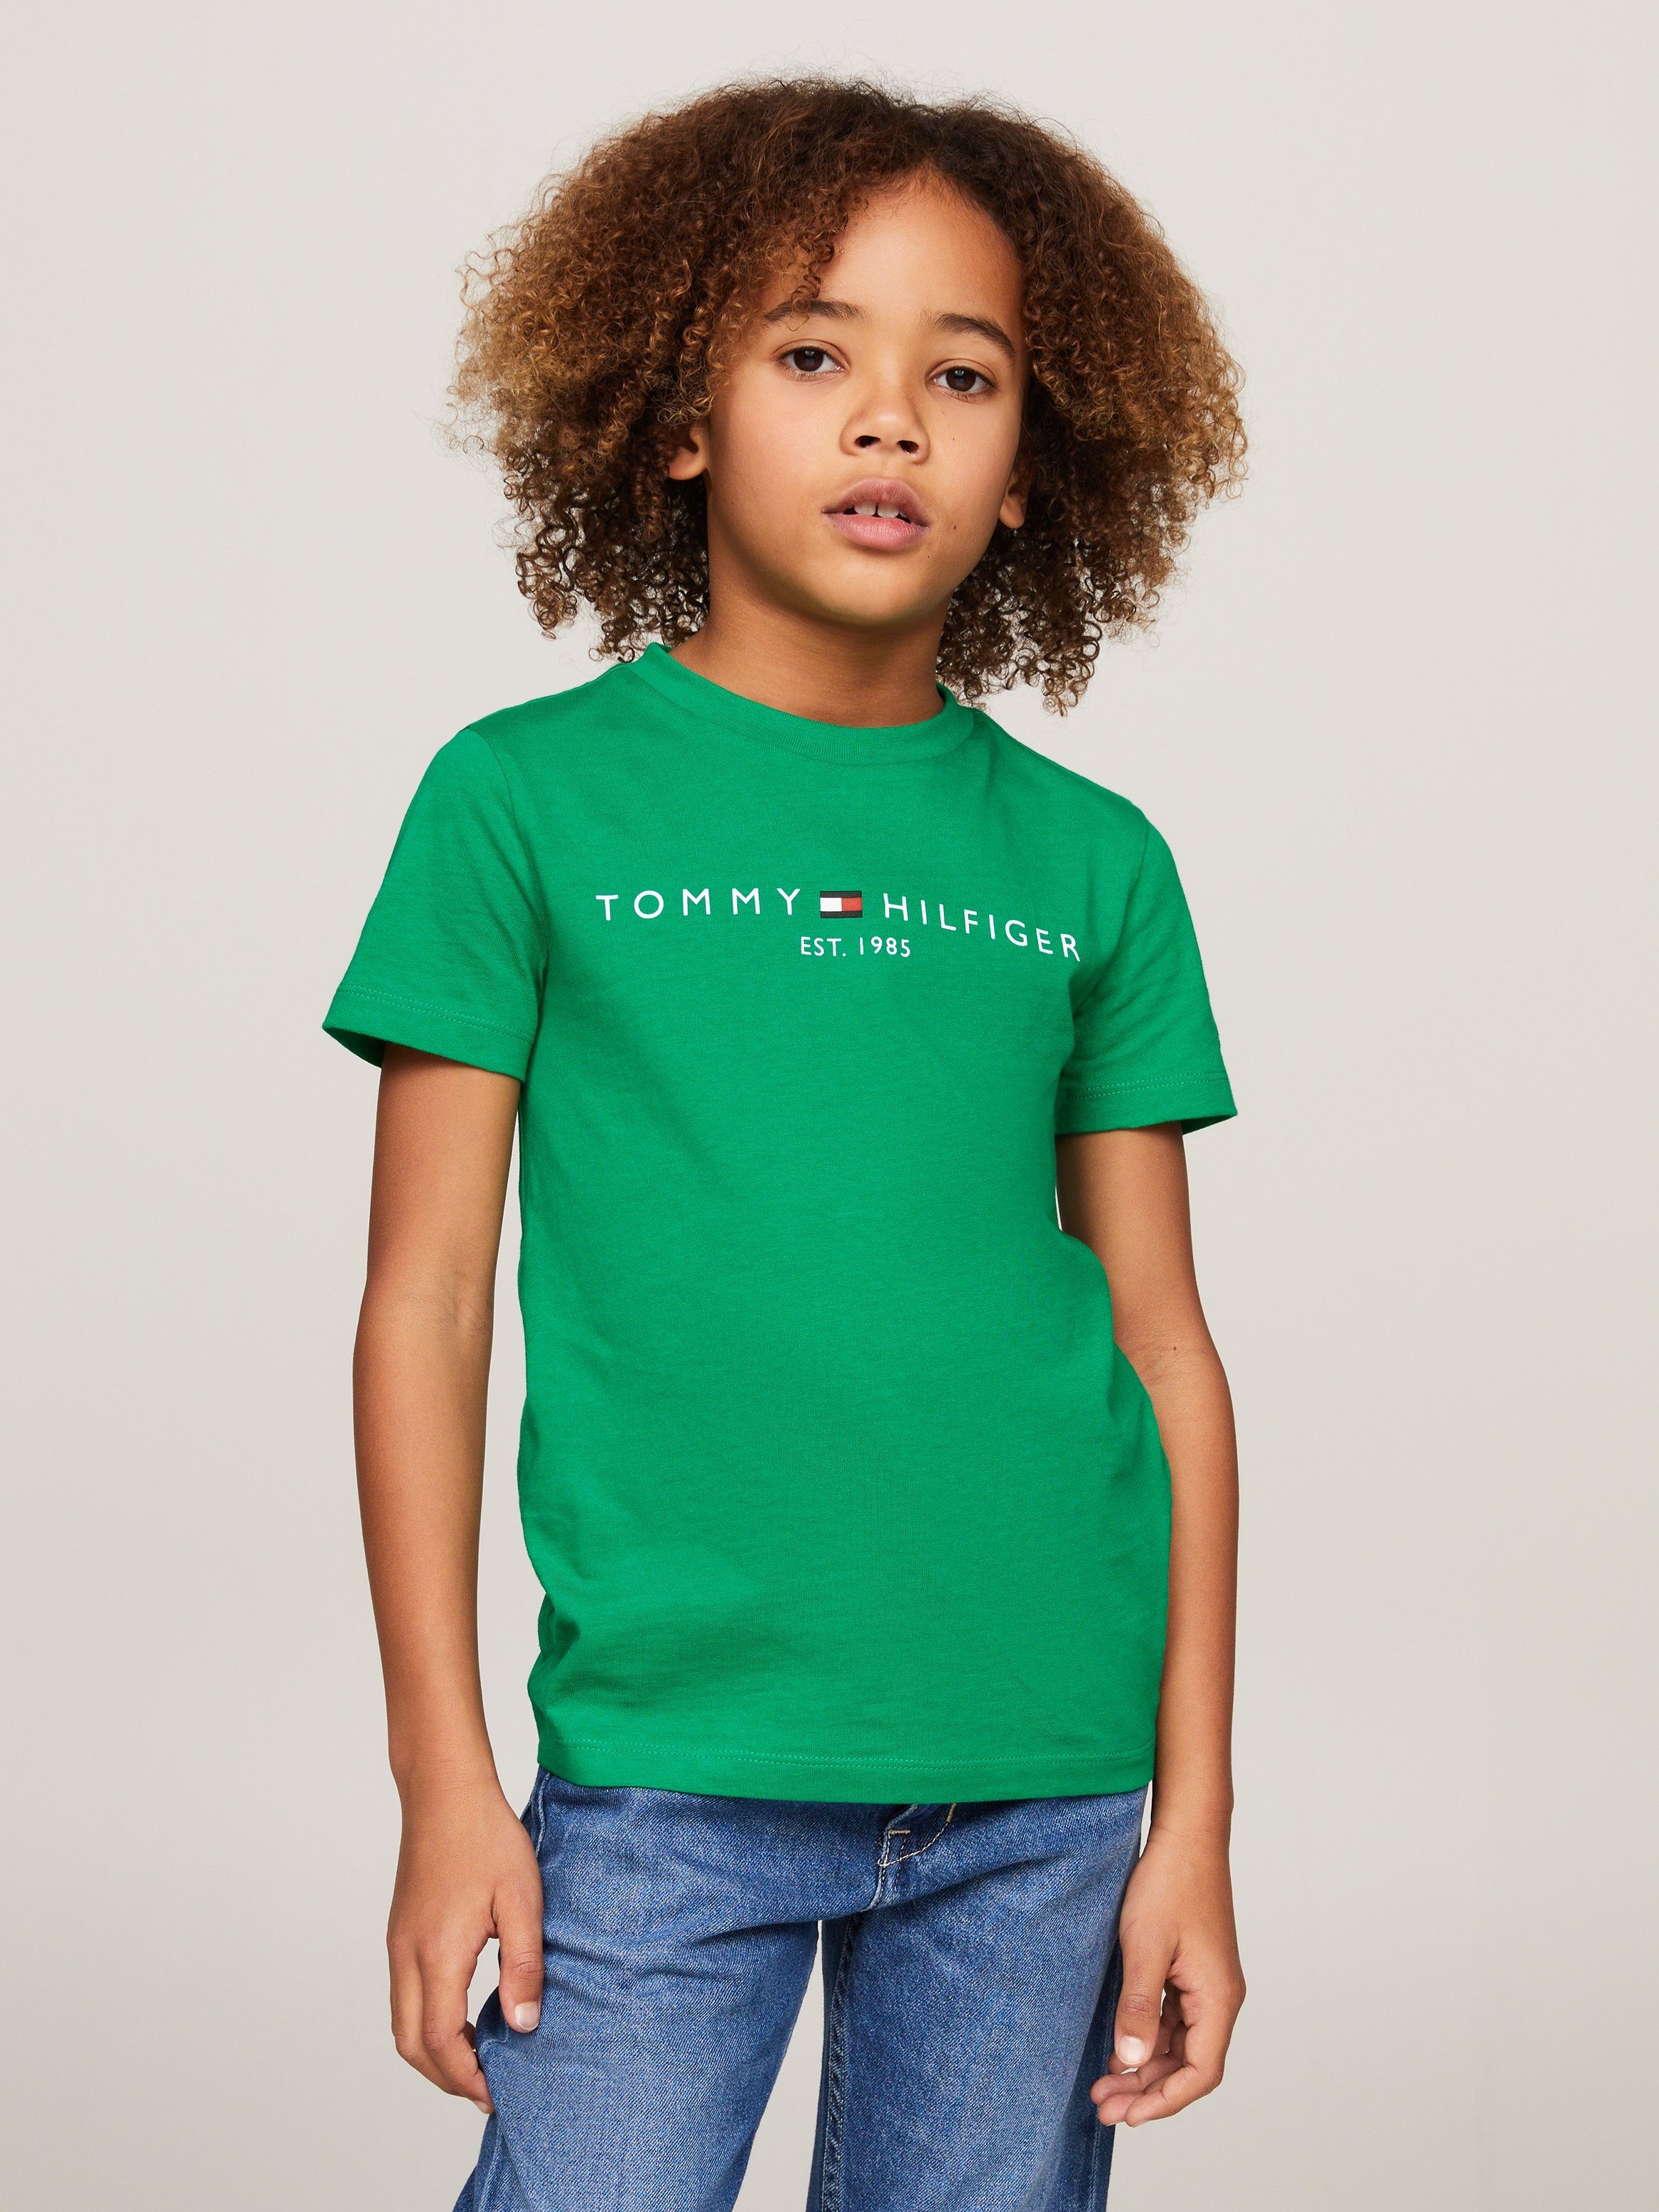 Tommy Hilfiger T-shirt met logo groen Katoen Ronde hals 128